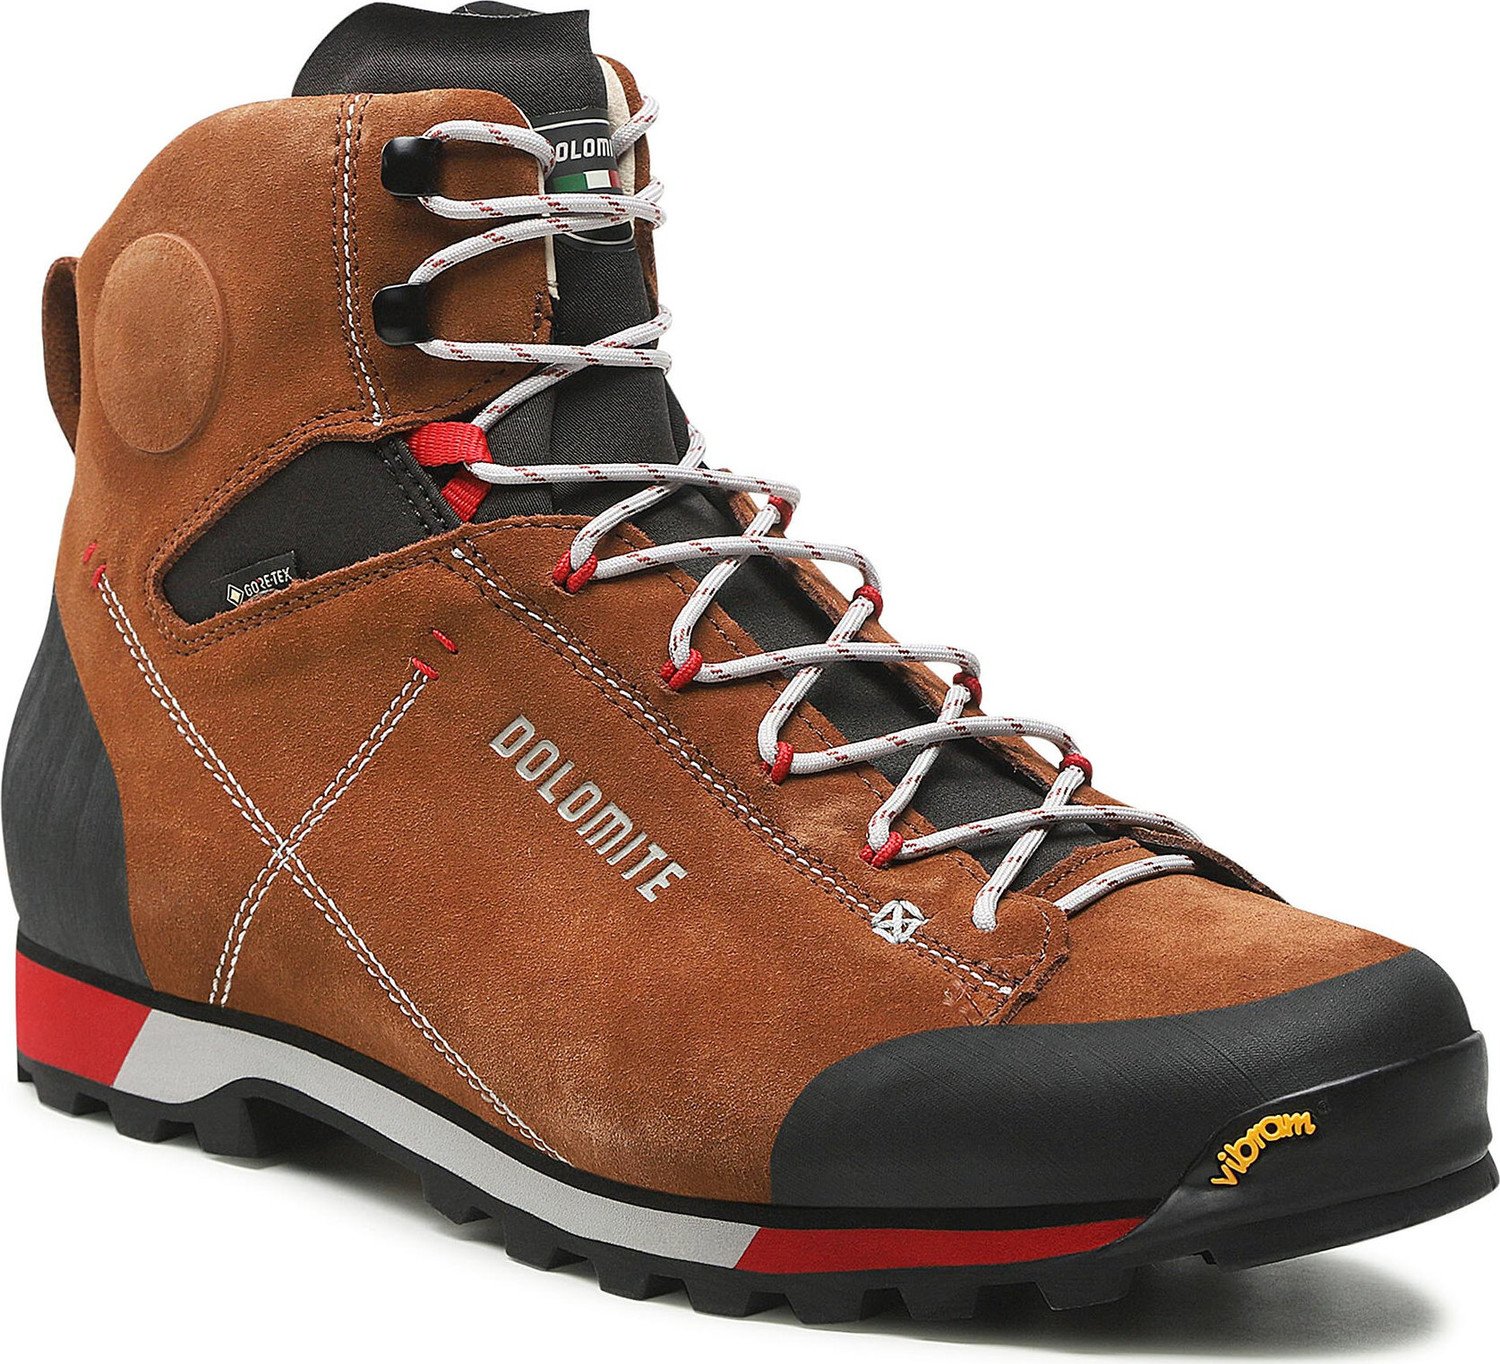 Trekingová obuv Dolomite Cinquantaquattro Hike Evo Gtx GORE-TEX 289207-1426020 Bronze Brown